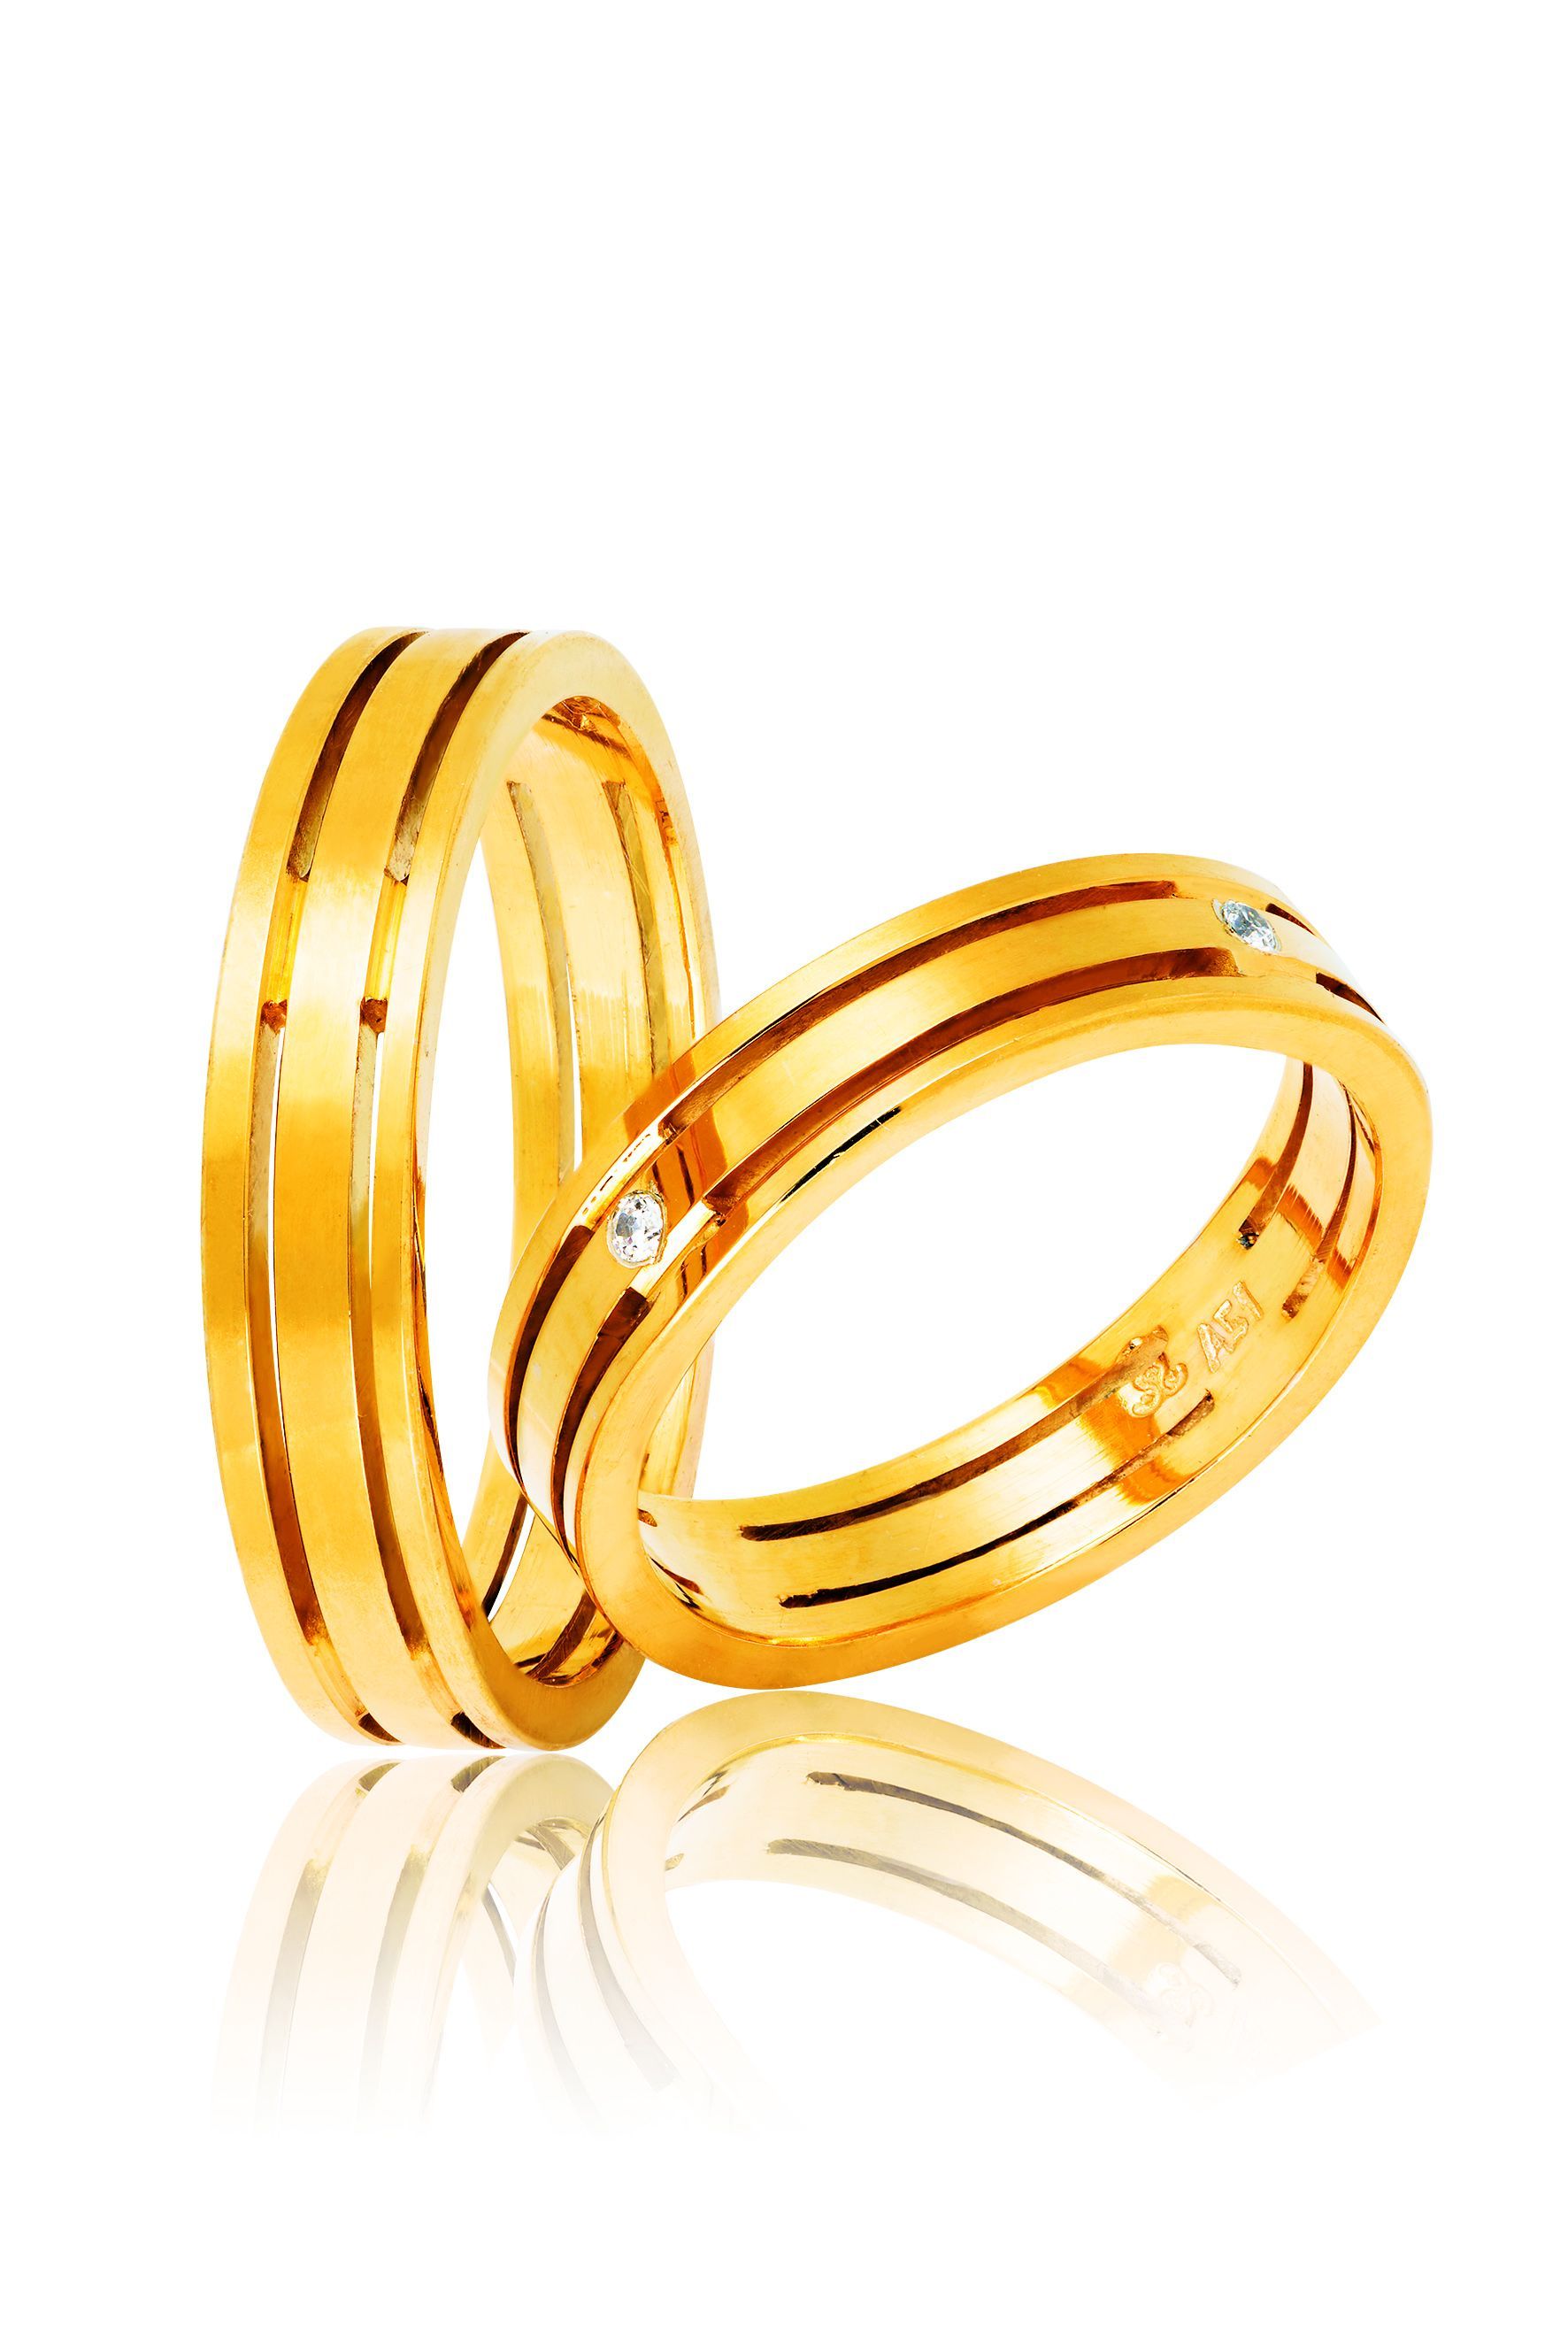 Βέρες γάμου απο χρυσό με αυλάκια, 4mm (code 2y)